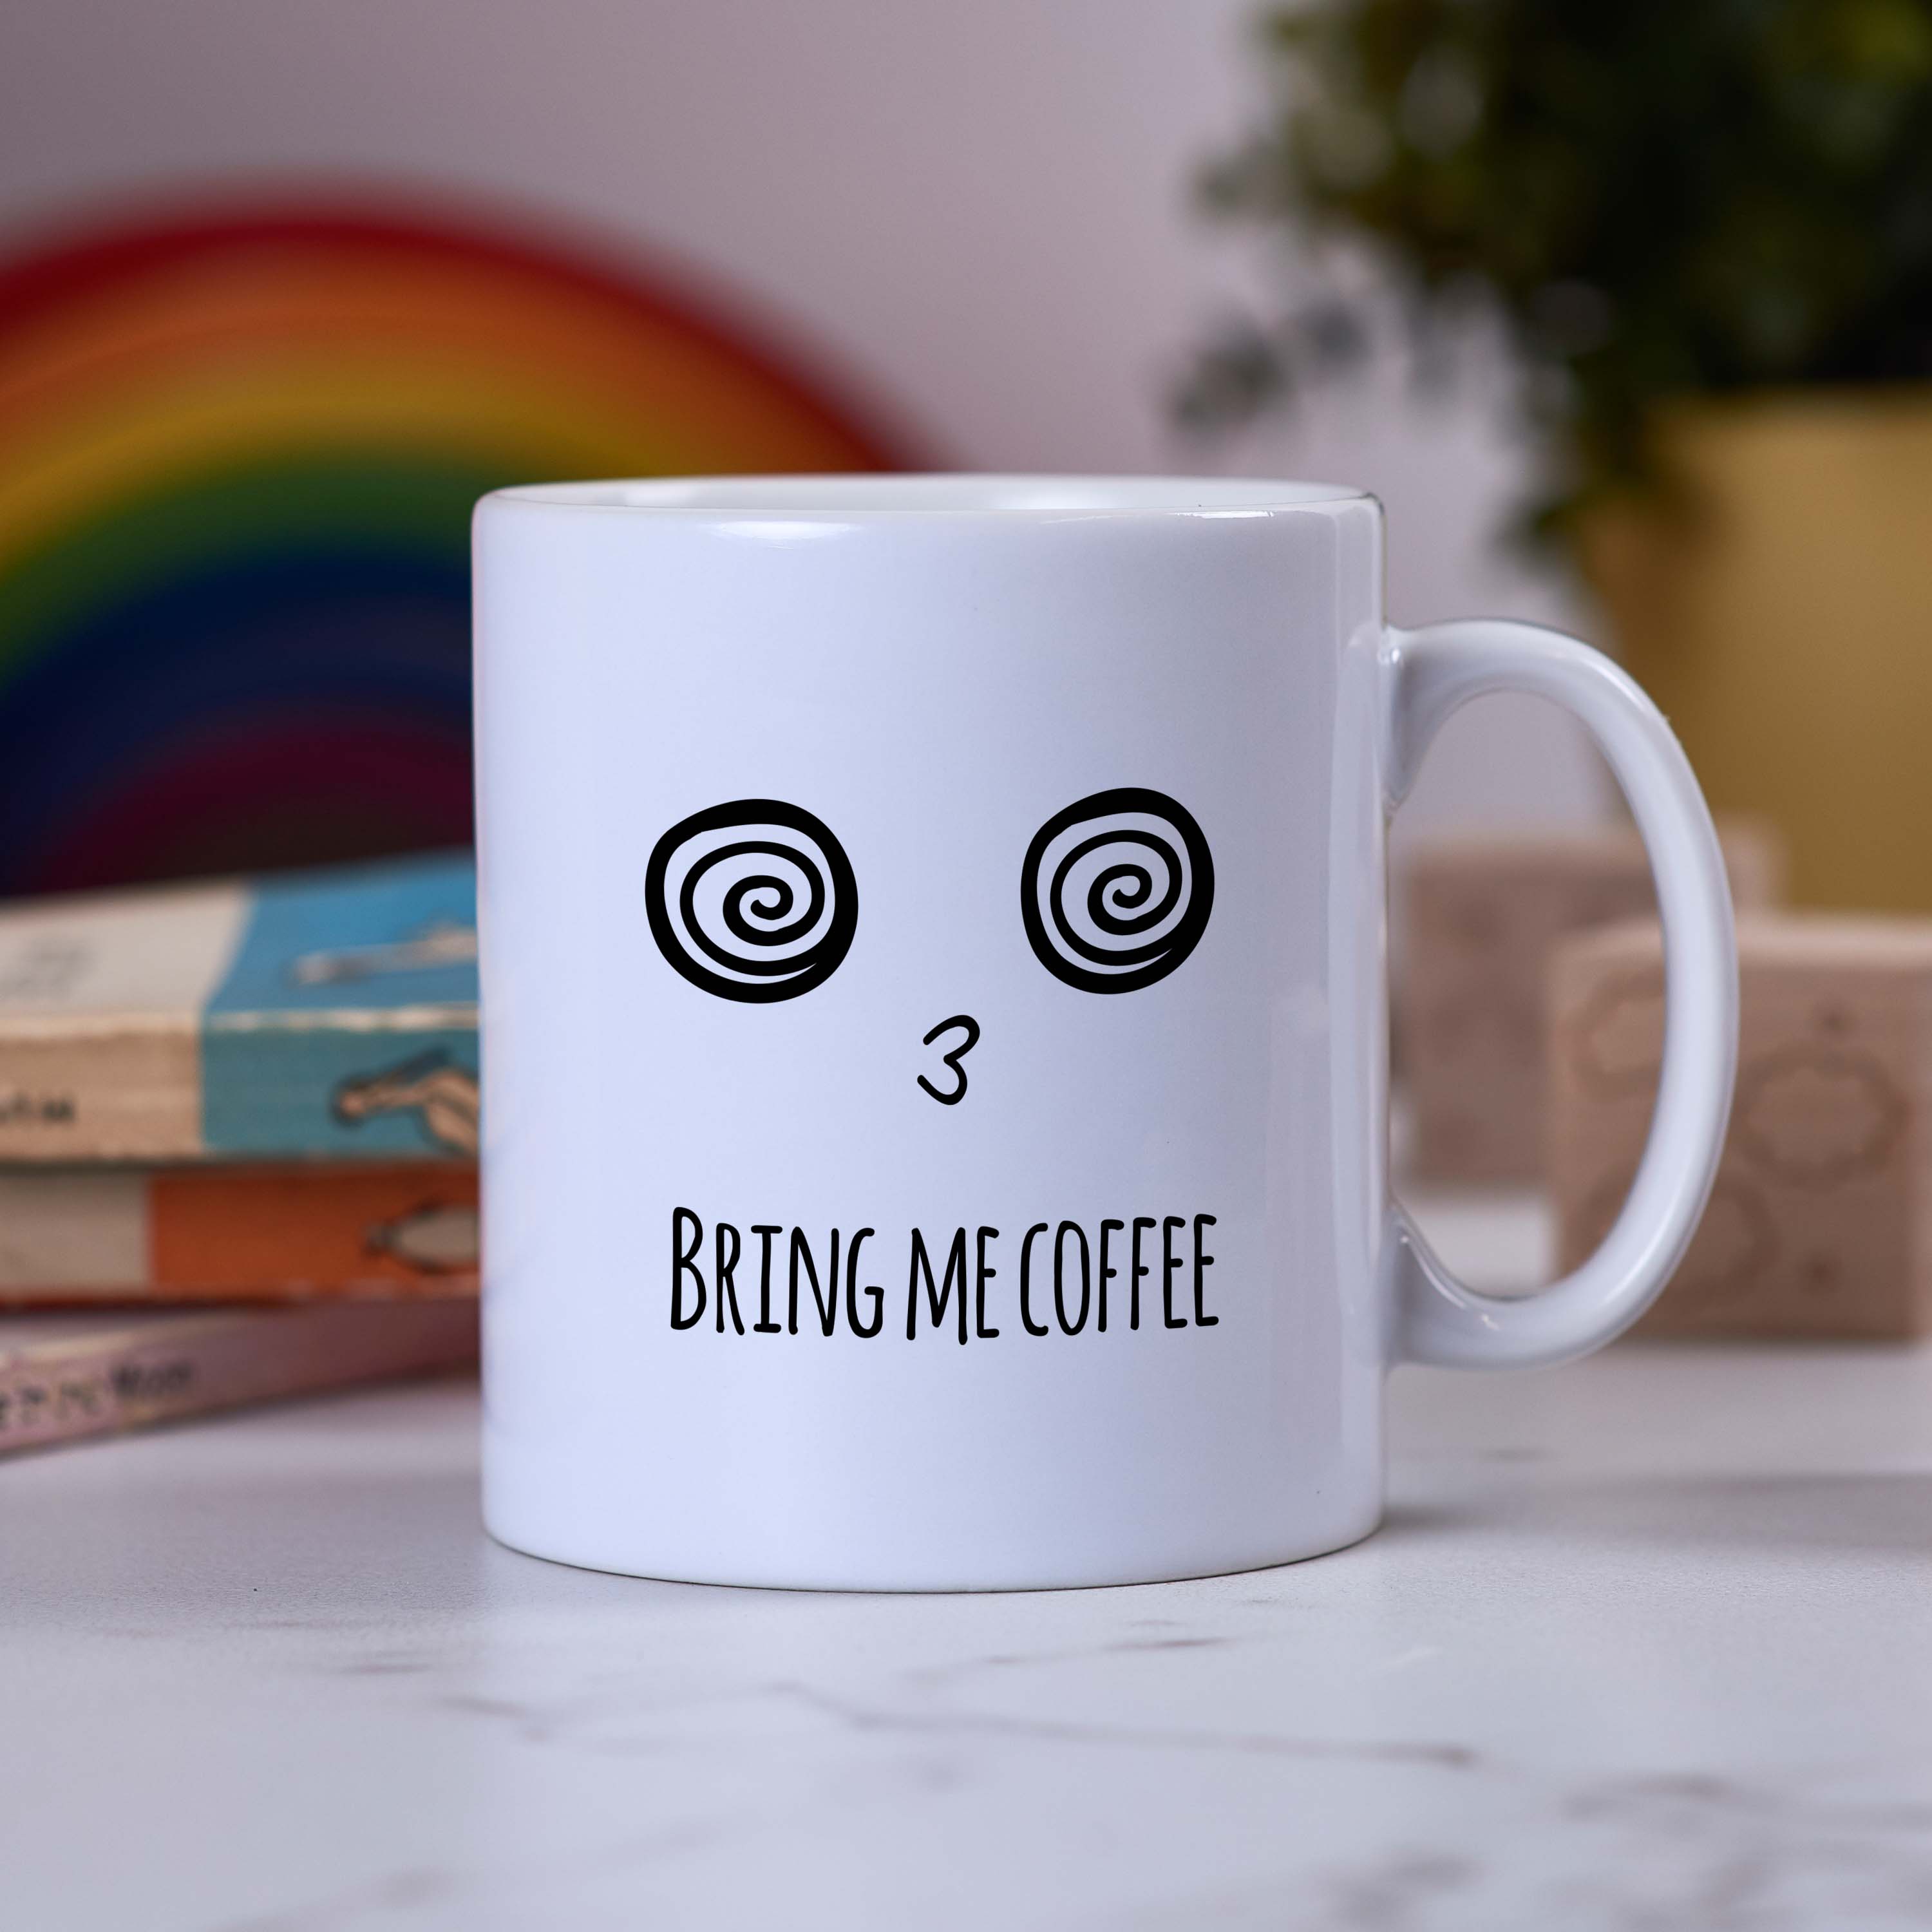 Bring me coffee Mug